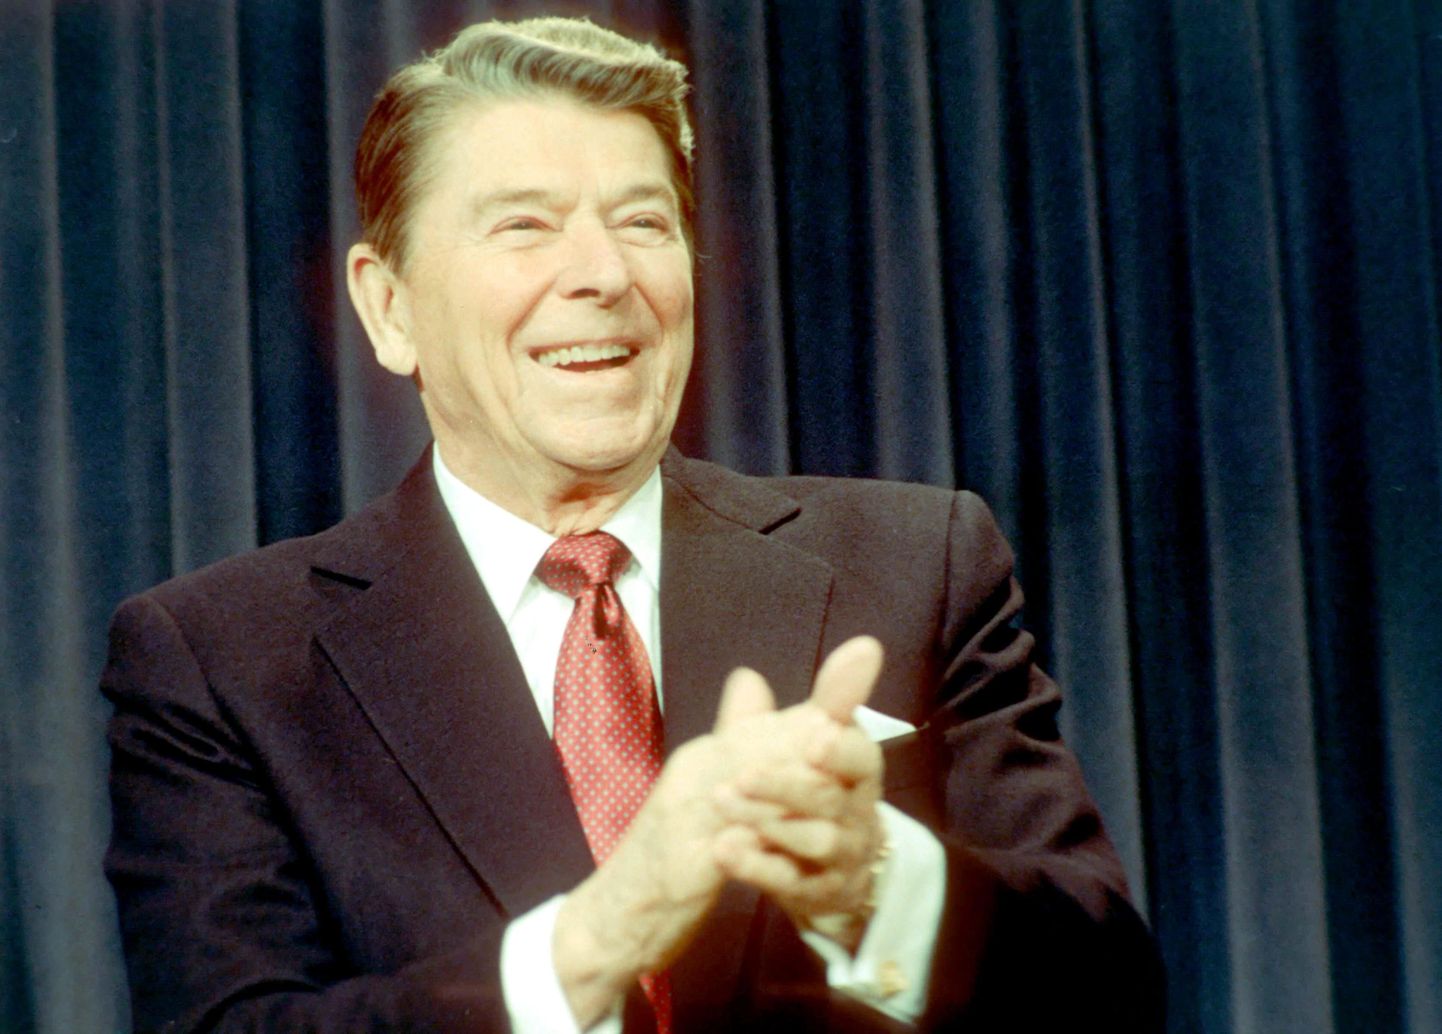 Ronald Reaganile meeldis aeg-ajalt rääkida anekdoote kommunistidest.